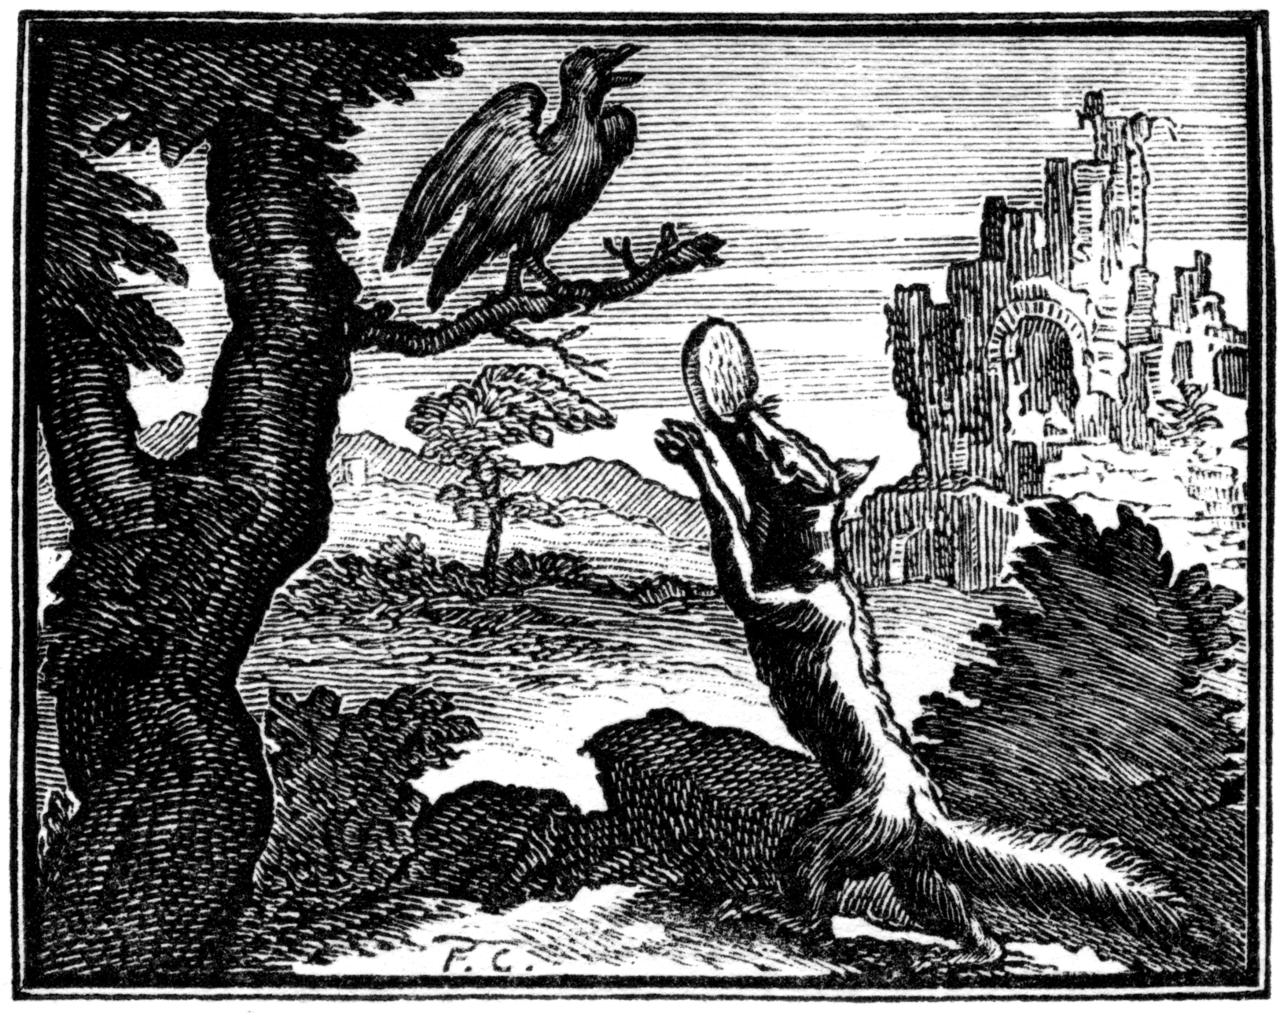 Ilustracja do bajki Kruk i lis Ilustracja do bajki Kruk i lis Źródło: François Chauveau, XVII wiek, drzeworyt, domena publiczna.